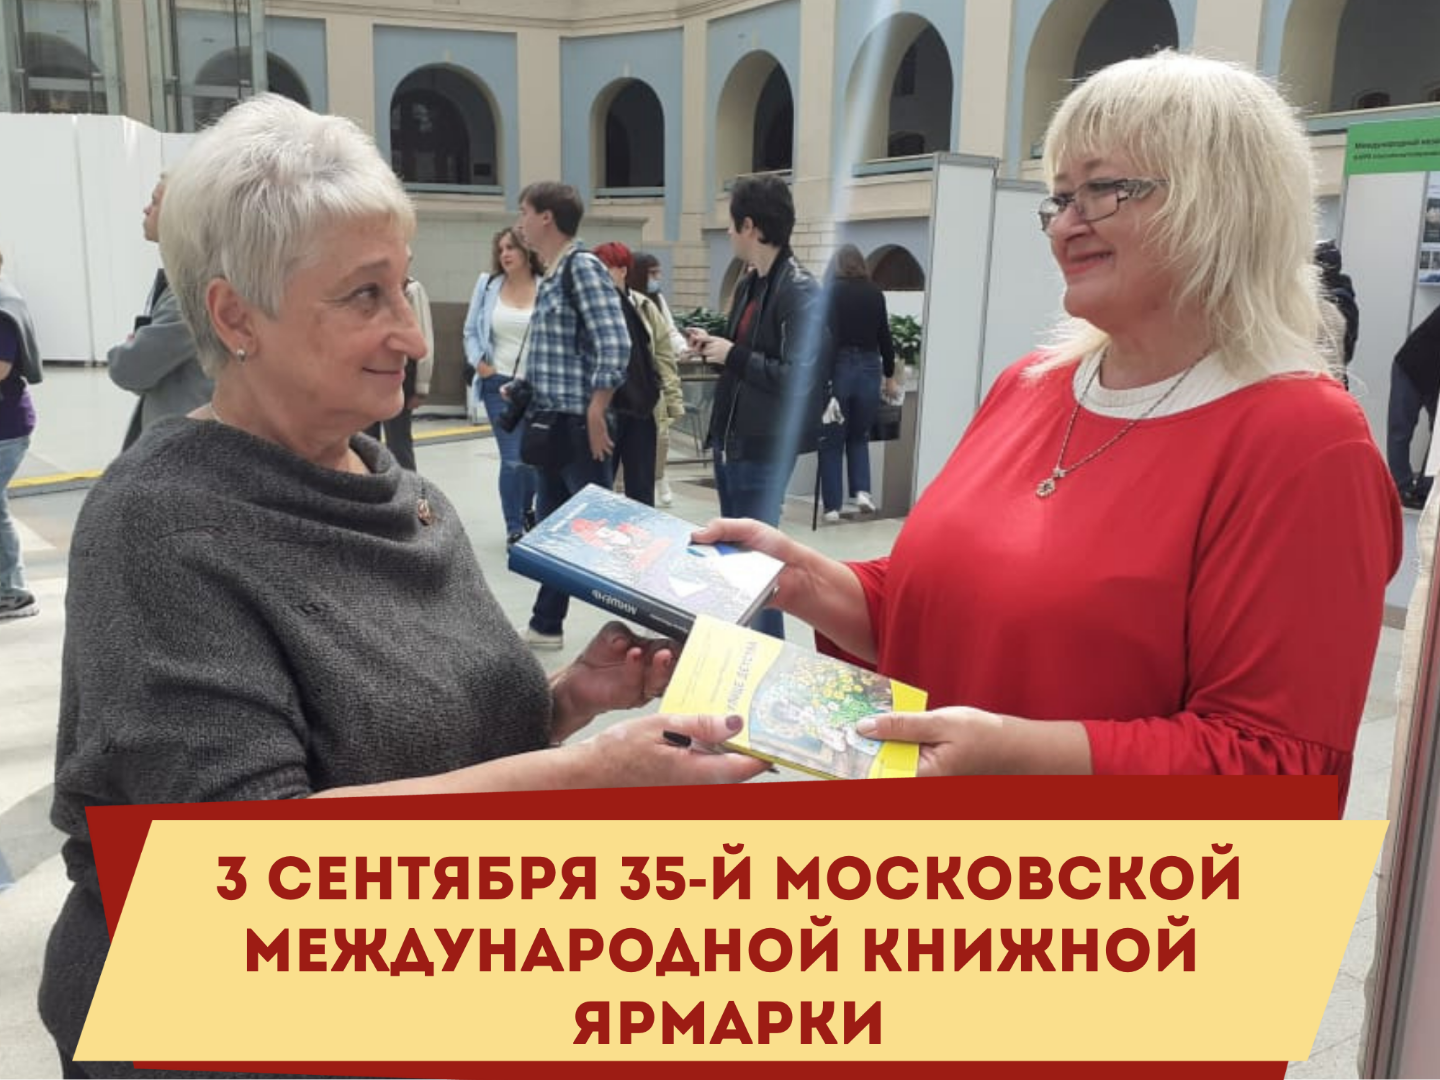 3 сентября 35-й Московской международной книжной ярмарки